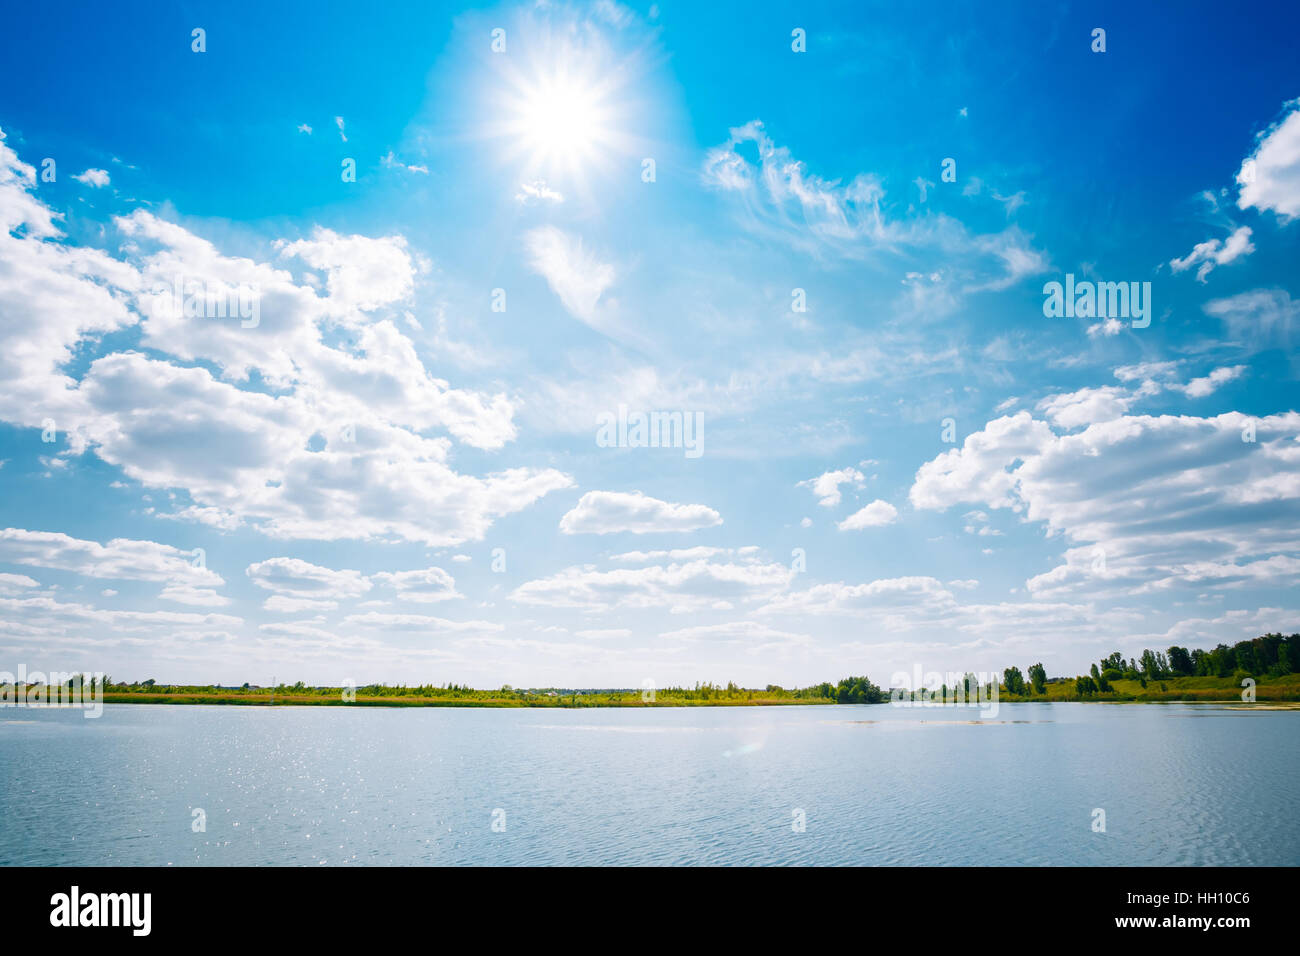 Scenic paesaggio fluviale della Skyline, Fiume Lago di superficie di acqua, luminoso cielo blu con nuvole bianche, Sun a Zenith. Copyspace sfondo. Foto Stock